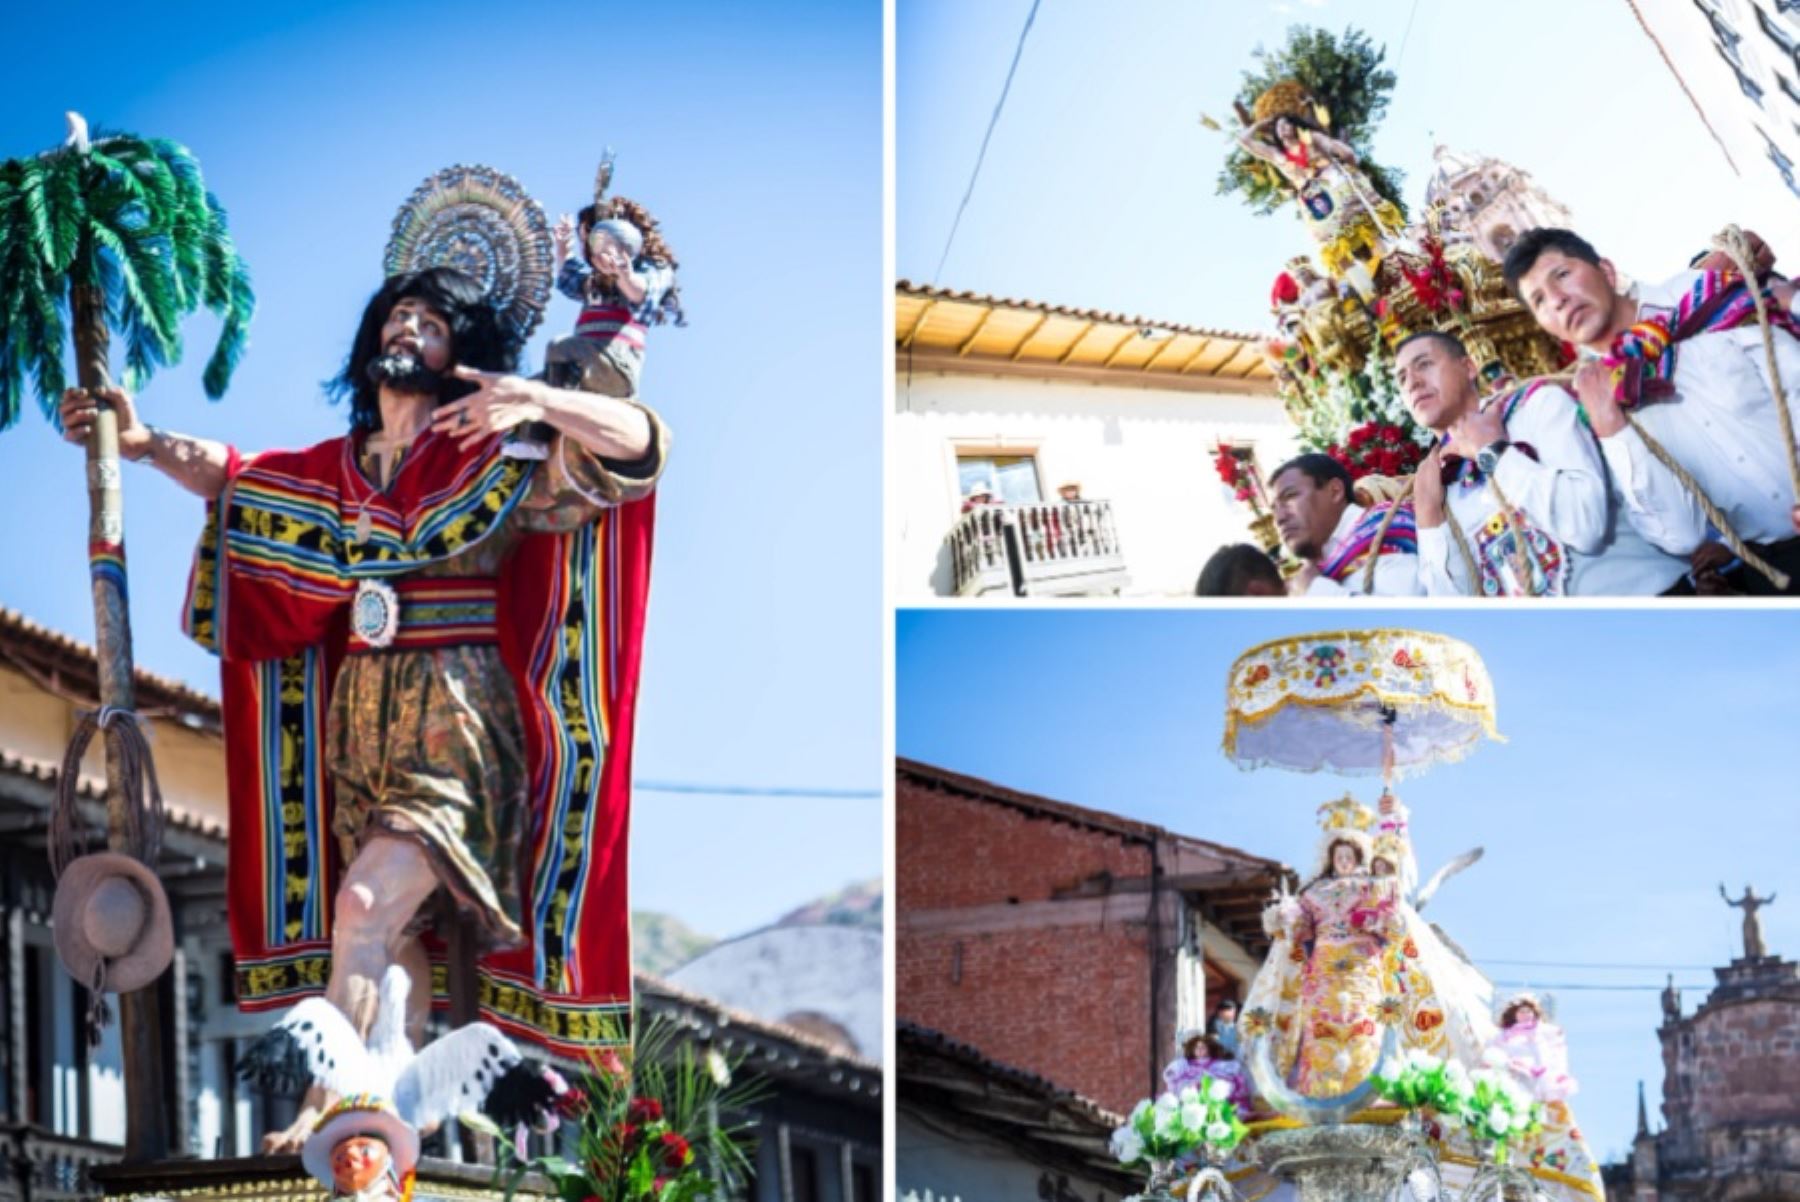 La región Cusco se apresta a celebrar en junio su mes jubilar. Serán 30 días de actividades oficiales plenas de profundo significado cultural, coronadas por las festividades más solemnes y majestuosas del año como el Corpus Christi.